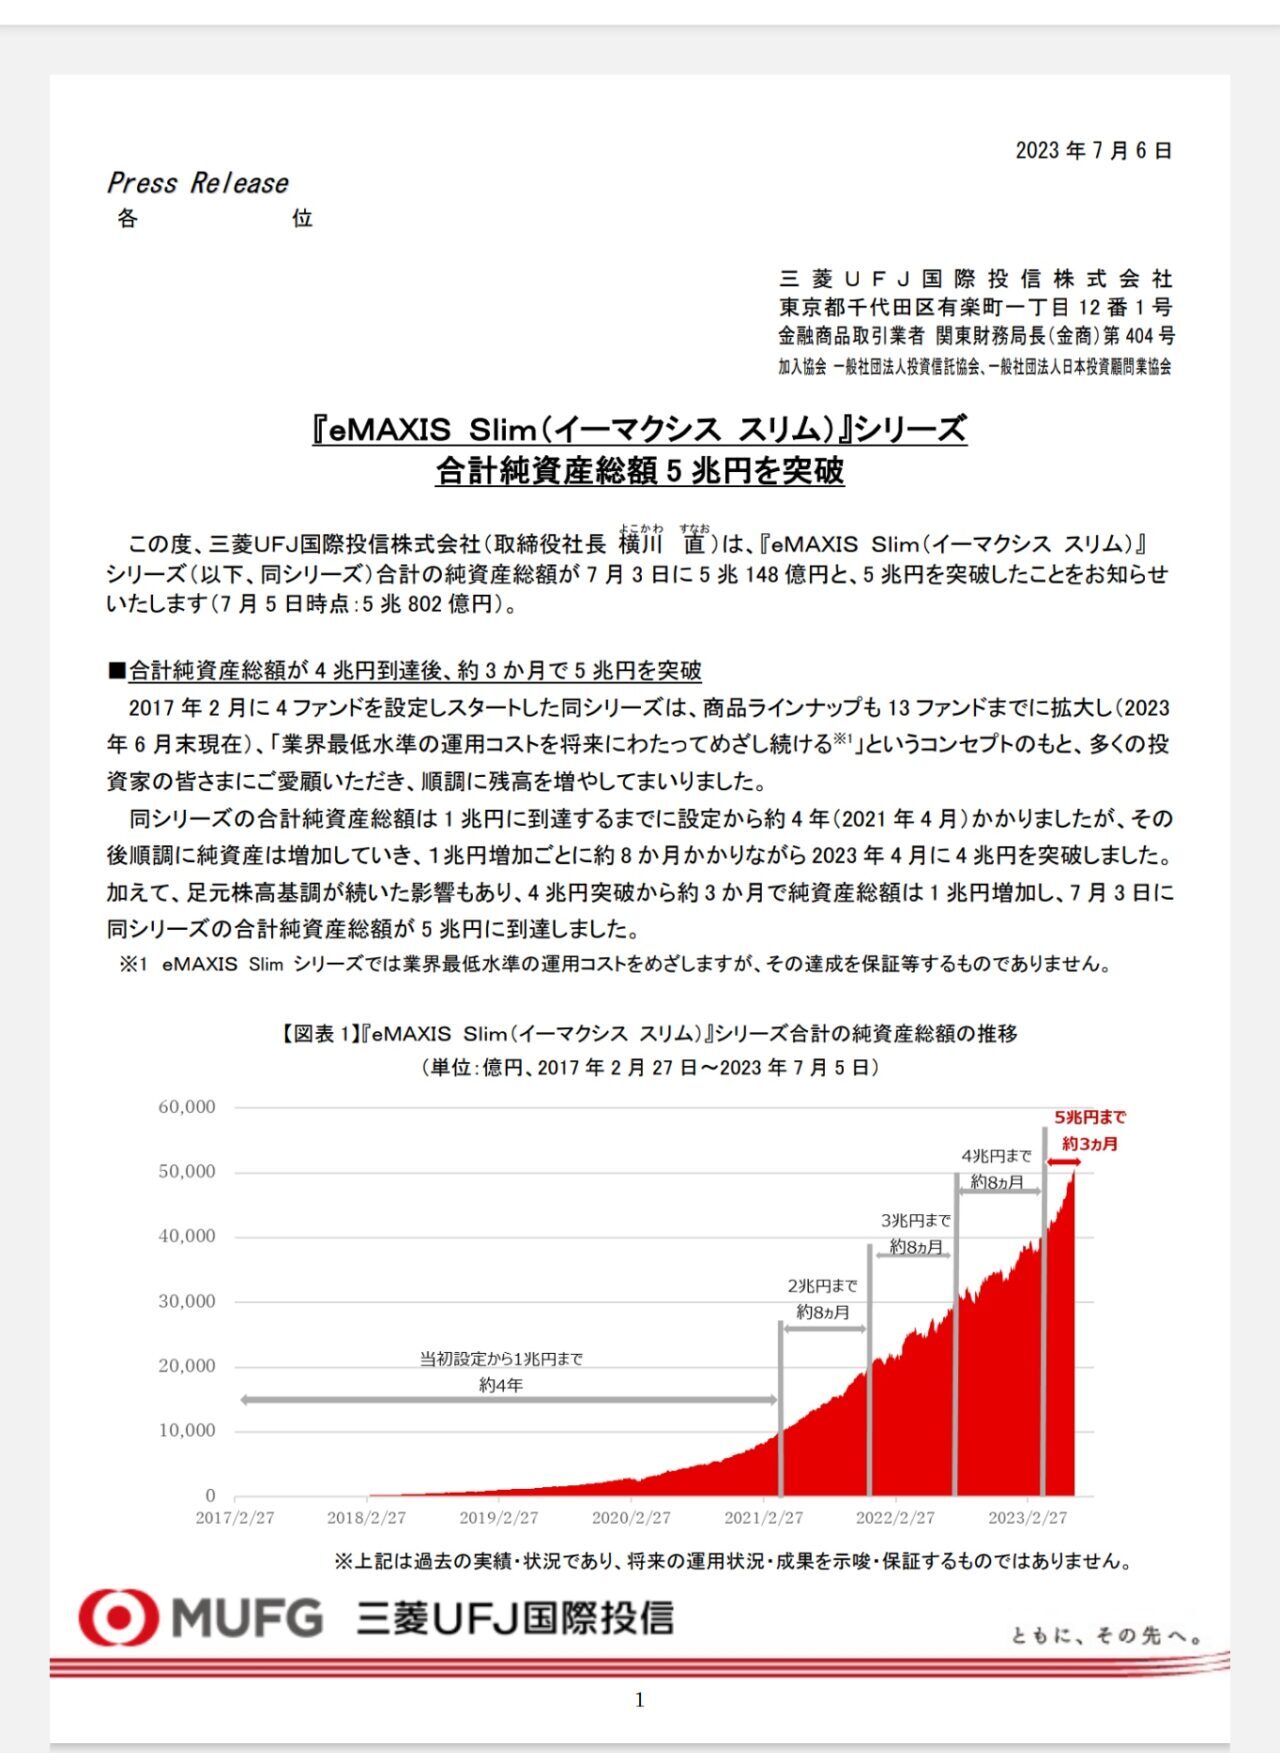 eMAXIS Slim５兆円